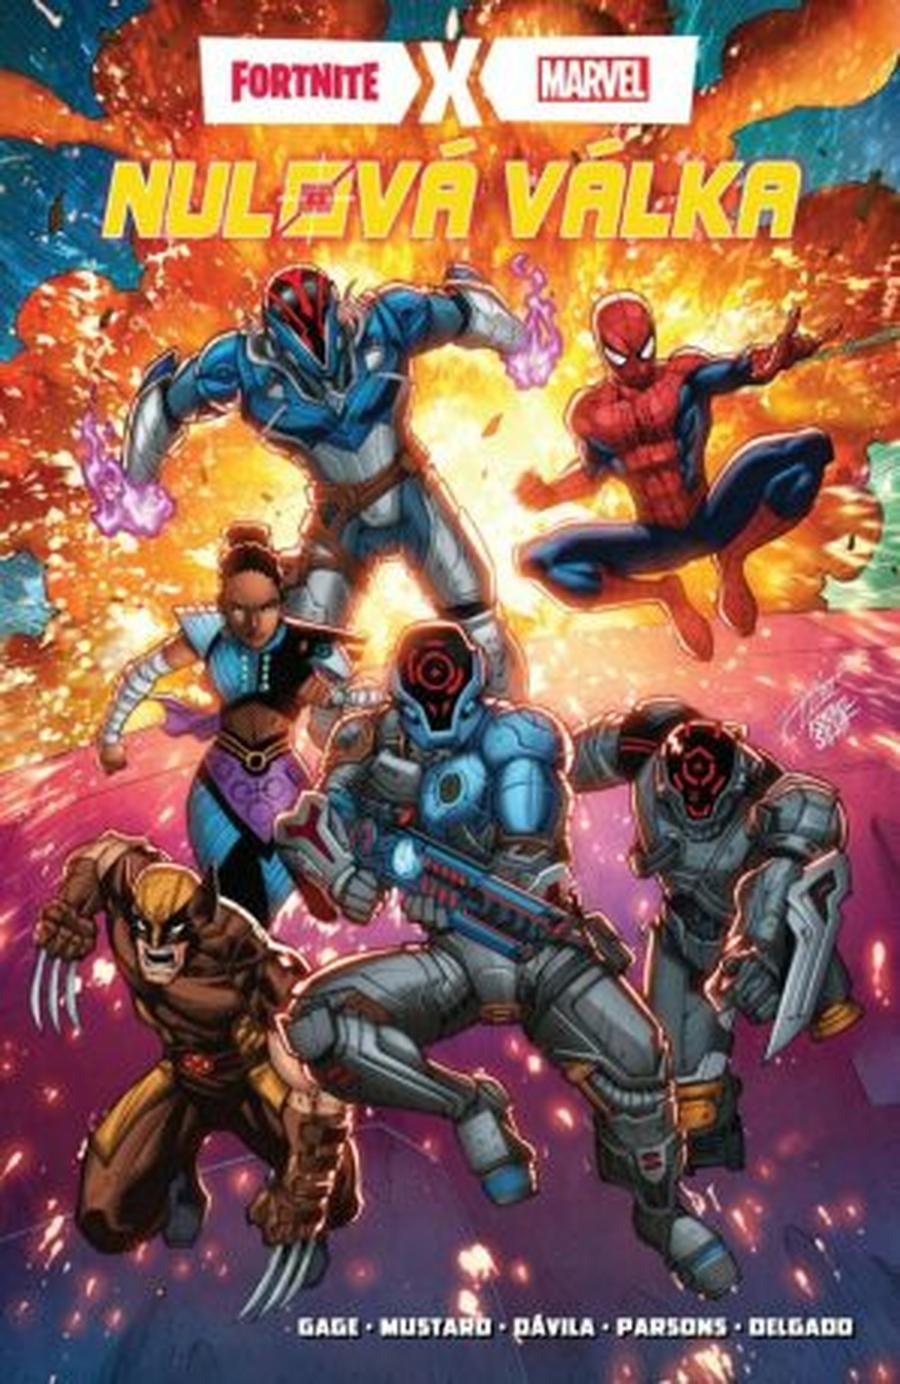 Fortnite X Marvel Nulová válka sebrané vydání - Christos Cage, Donald Mustard